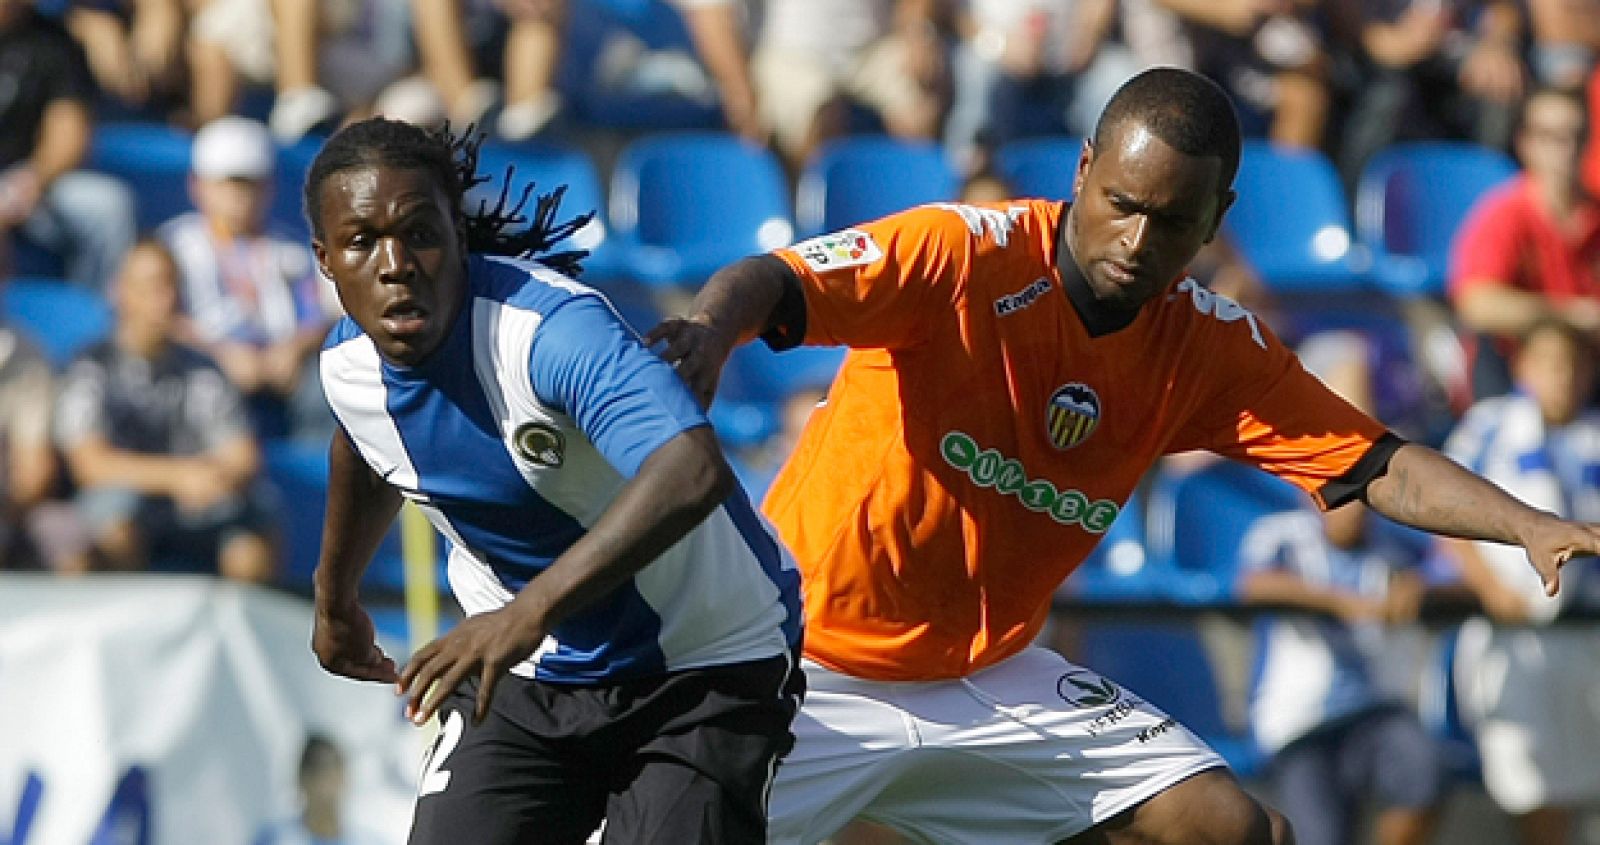 El jugador del Hércules Drenthe y el valencianista Miguel luchan por el control del balón.